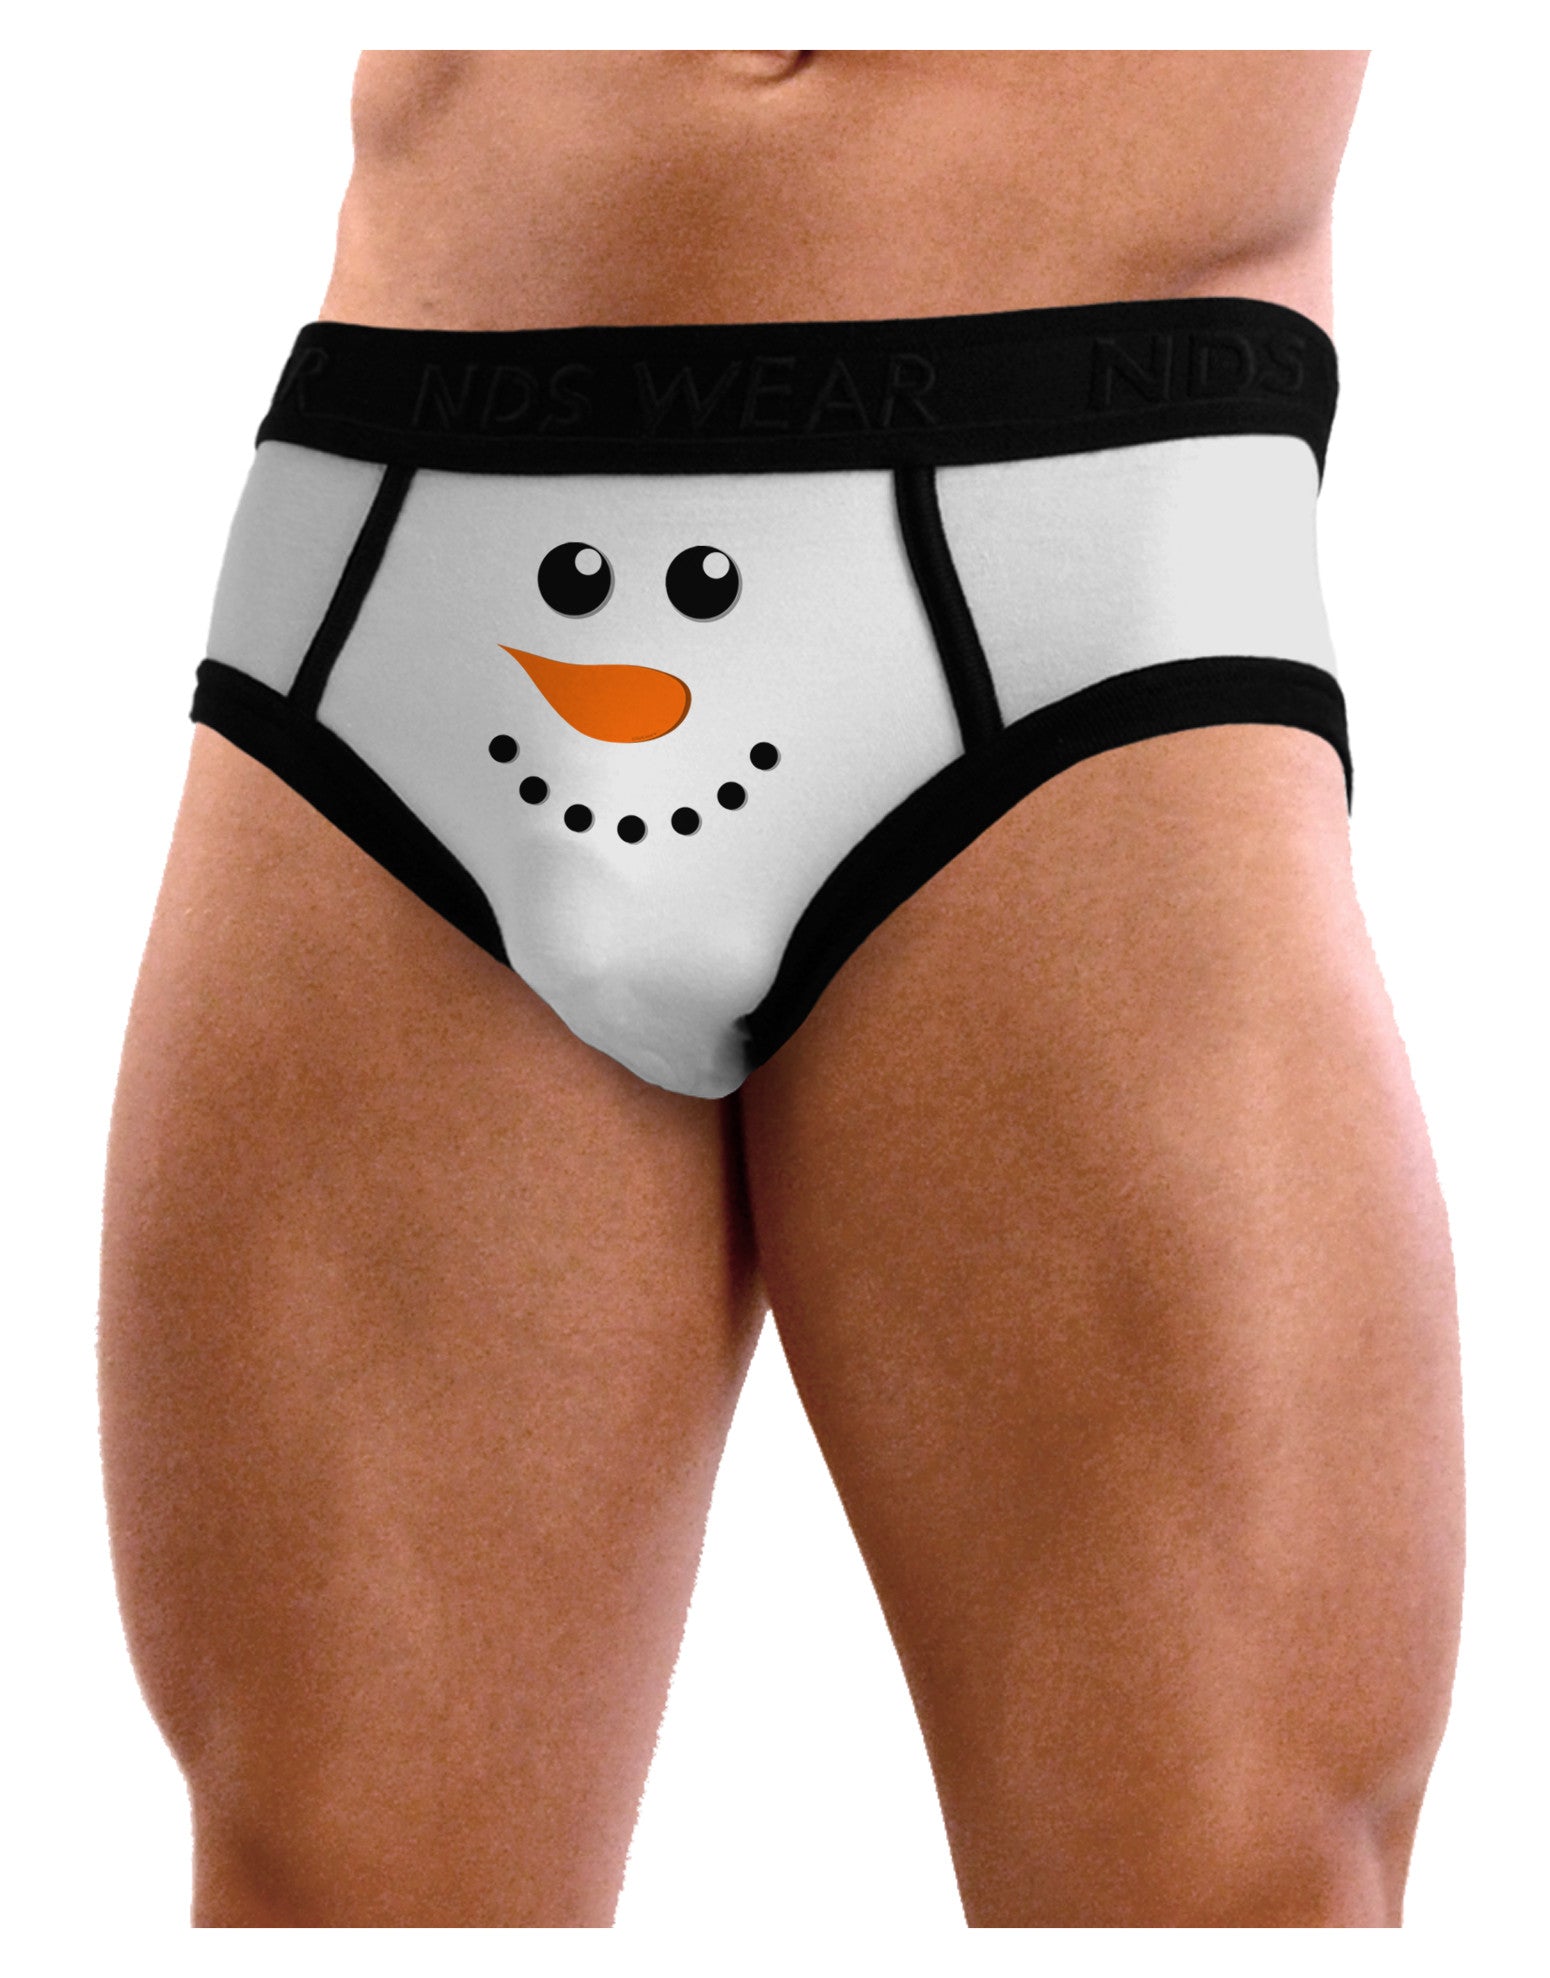 Snowman Face Christmas Mens NDS Wear Briefs Underwear